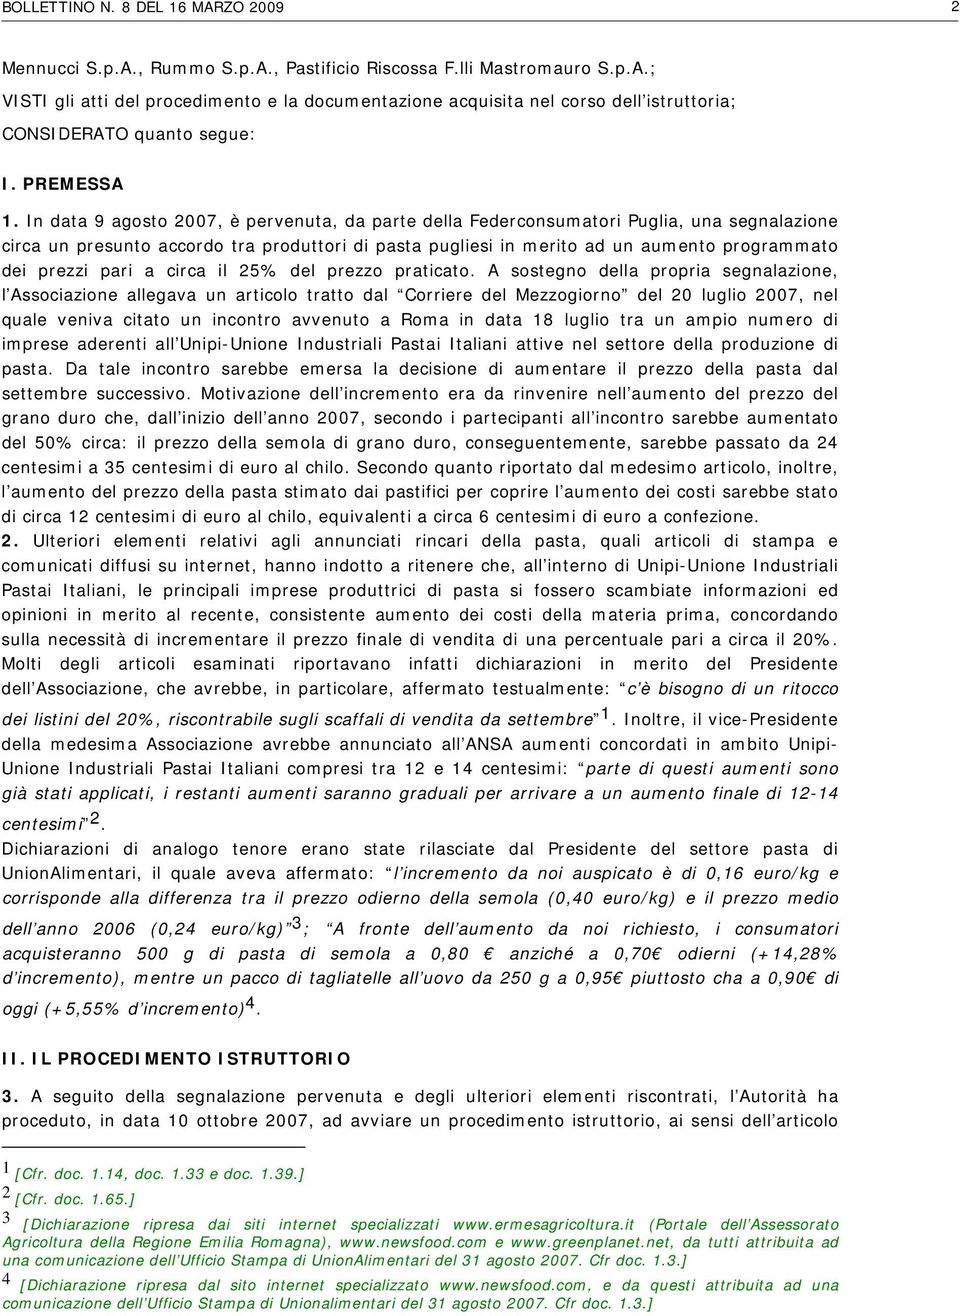 In data 9 agosto 2007, è pervenuta, da parte della Federconsumatori Puglia, una segnalazione circa un presunto accordo tra produttori di pasta pugliesi in merito ad un aumento programmato dei prezzi